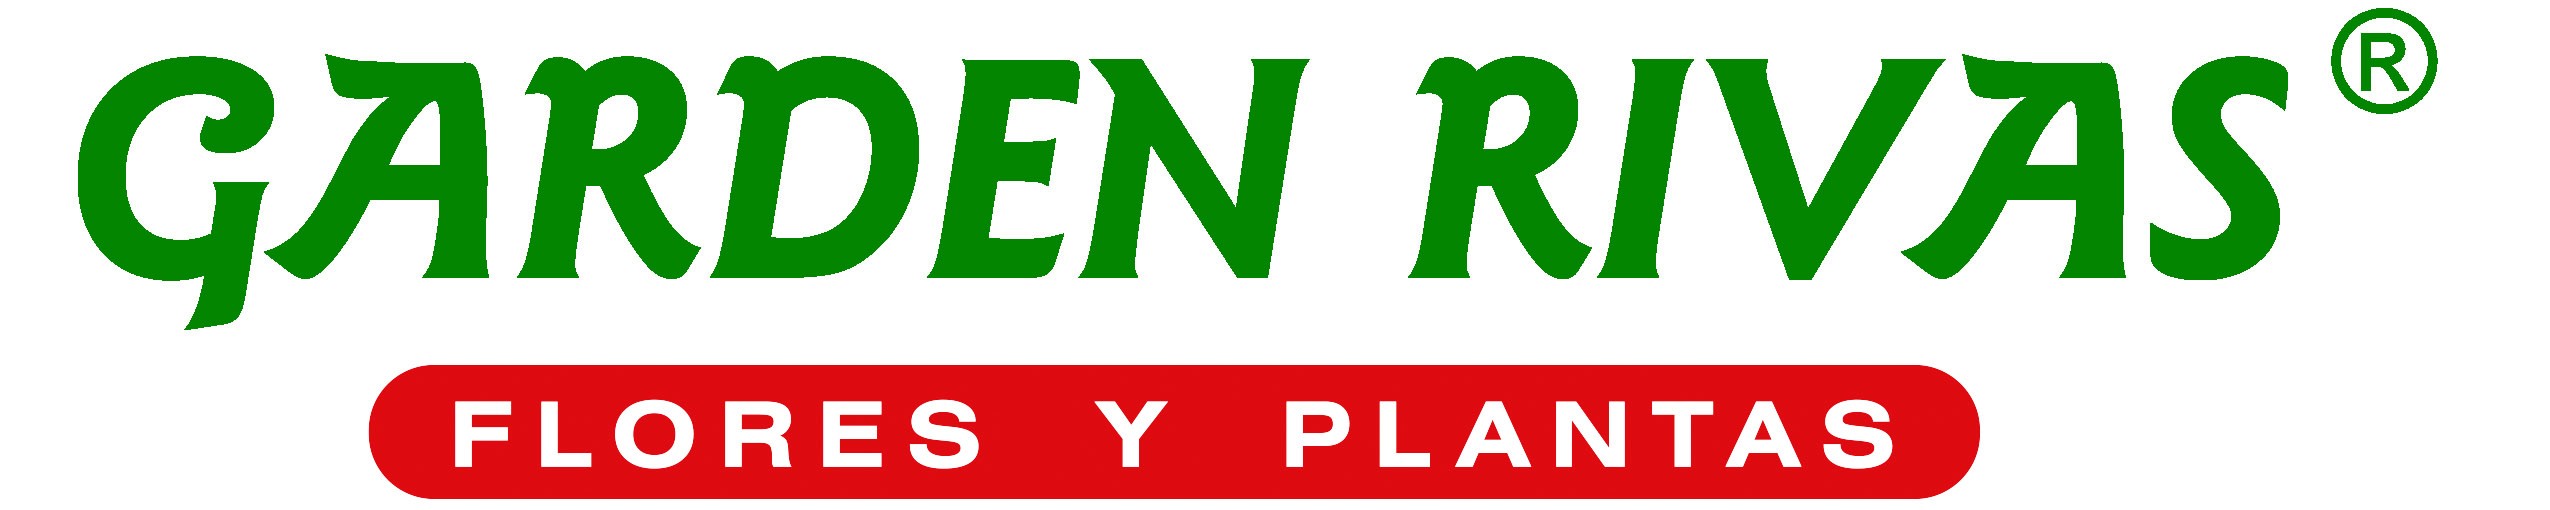 GARDEN RIVAS logo